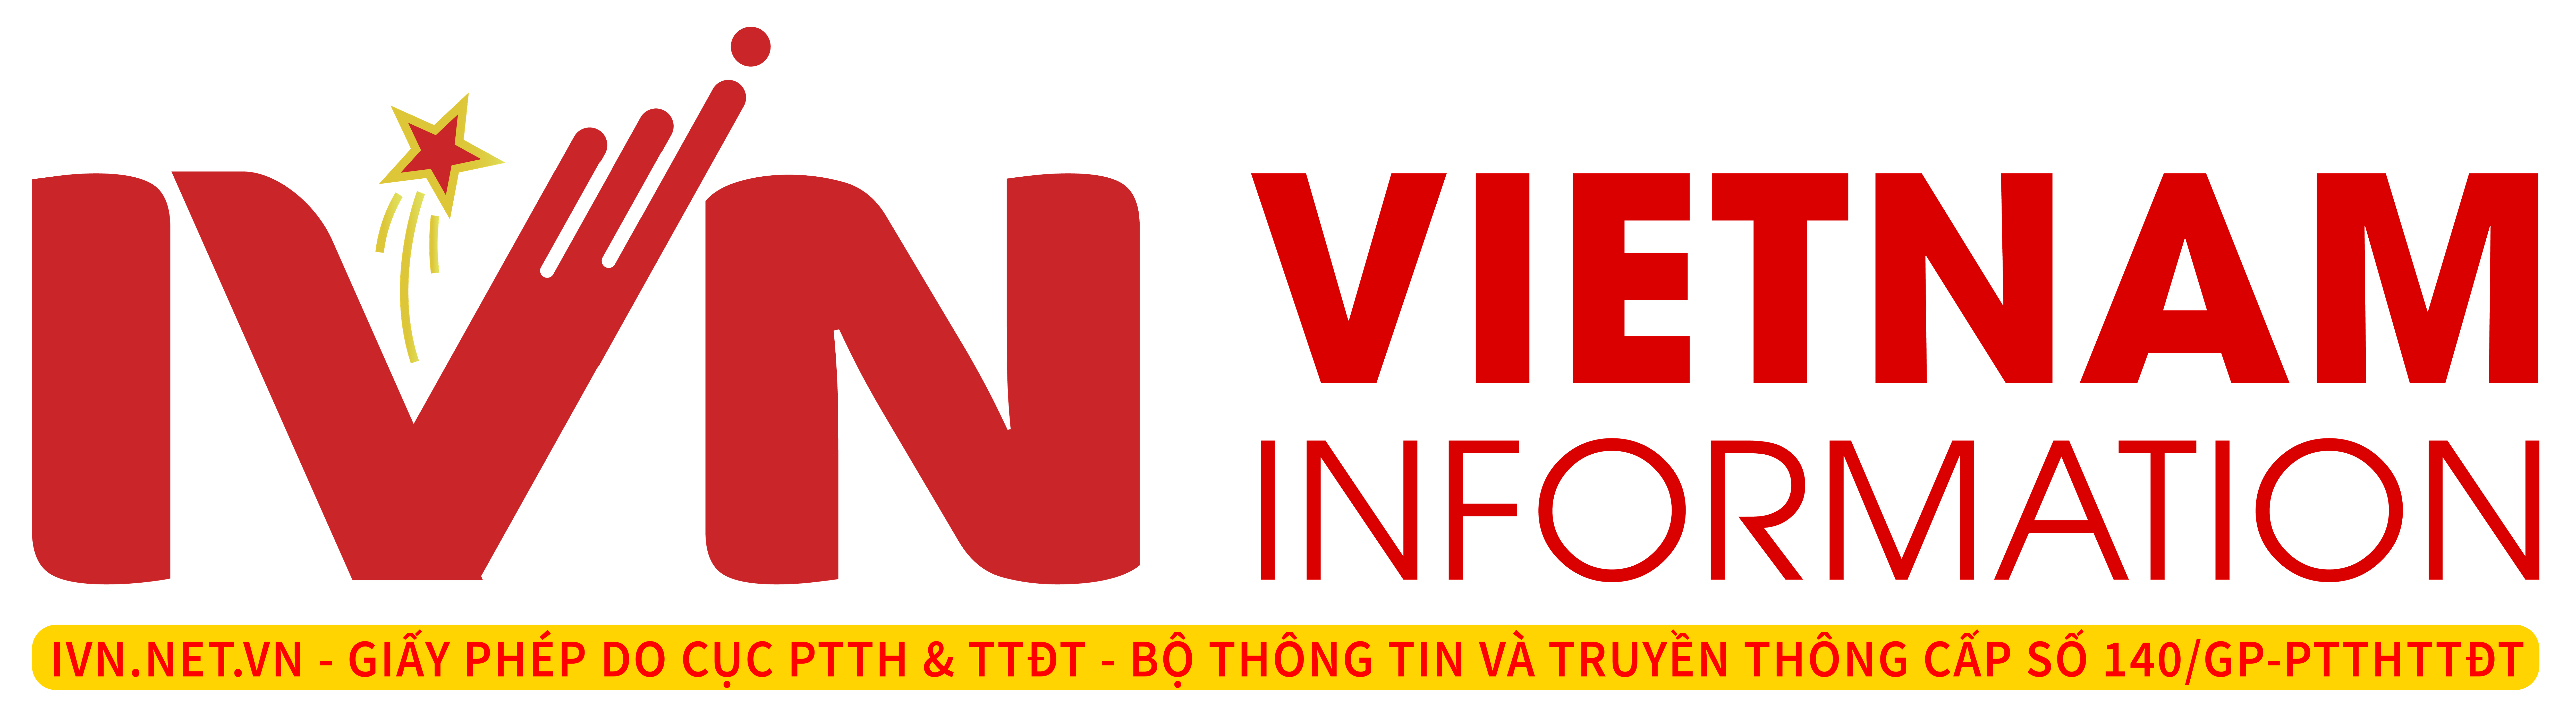 IVN - Vietnam Information - Thông tin Việt Nam - ivn.net.vn - IVNTV